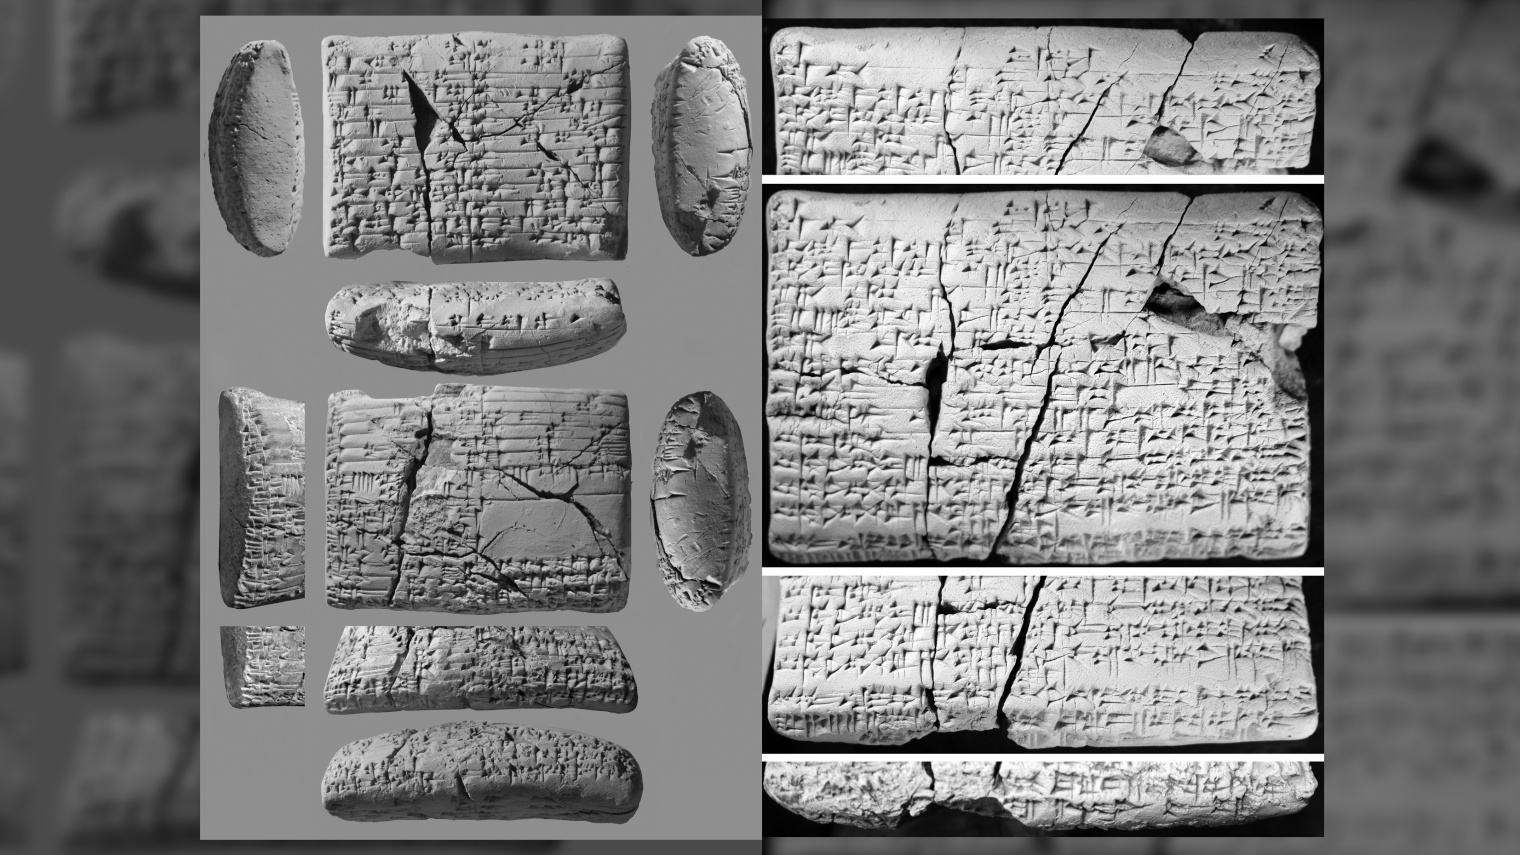 แท็บเล็ตอายุ 4,000 ปีเผยคำแปลสำหรับภาษาที่ 'สูญหาย' รวมถึงเพลงรัก